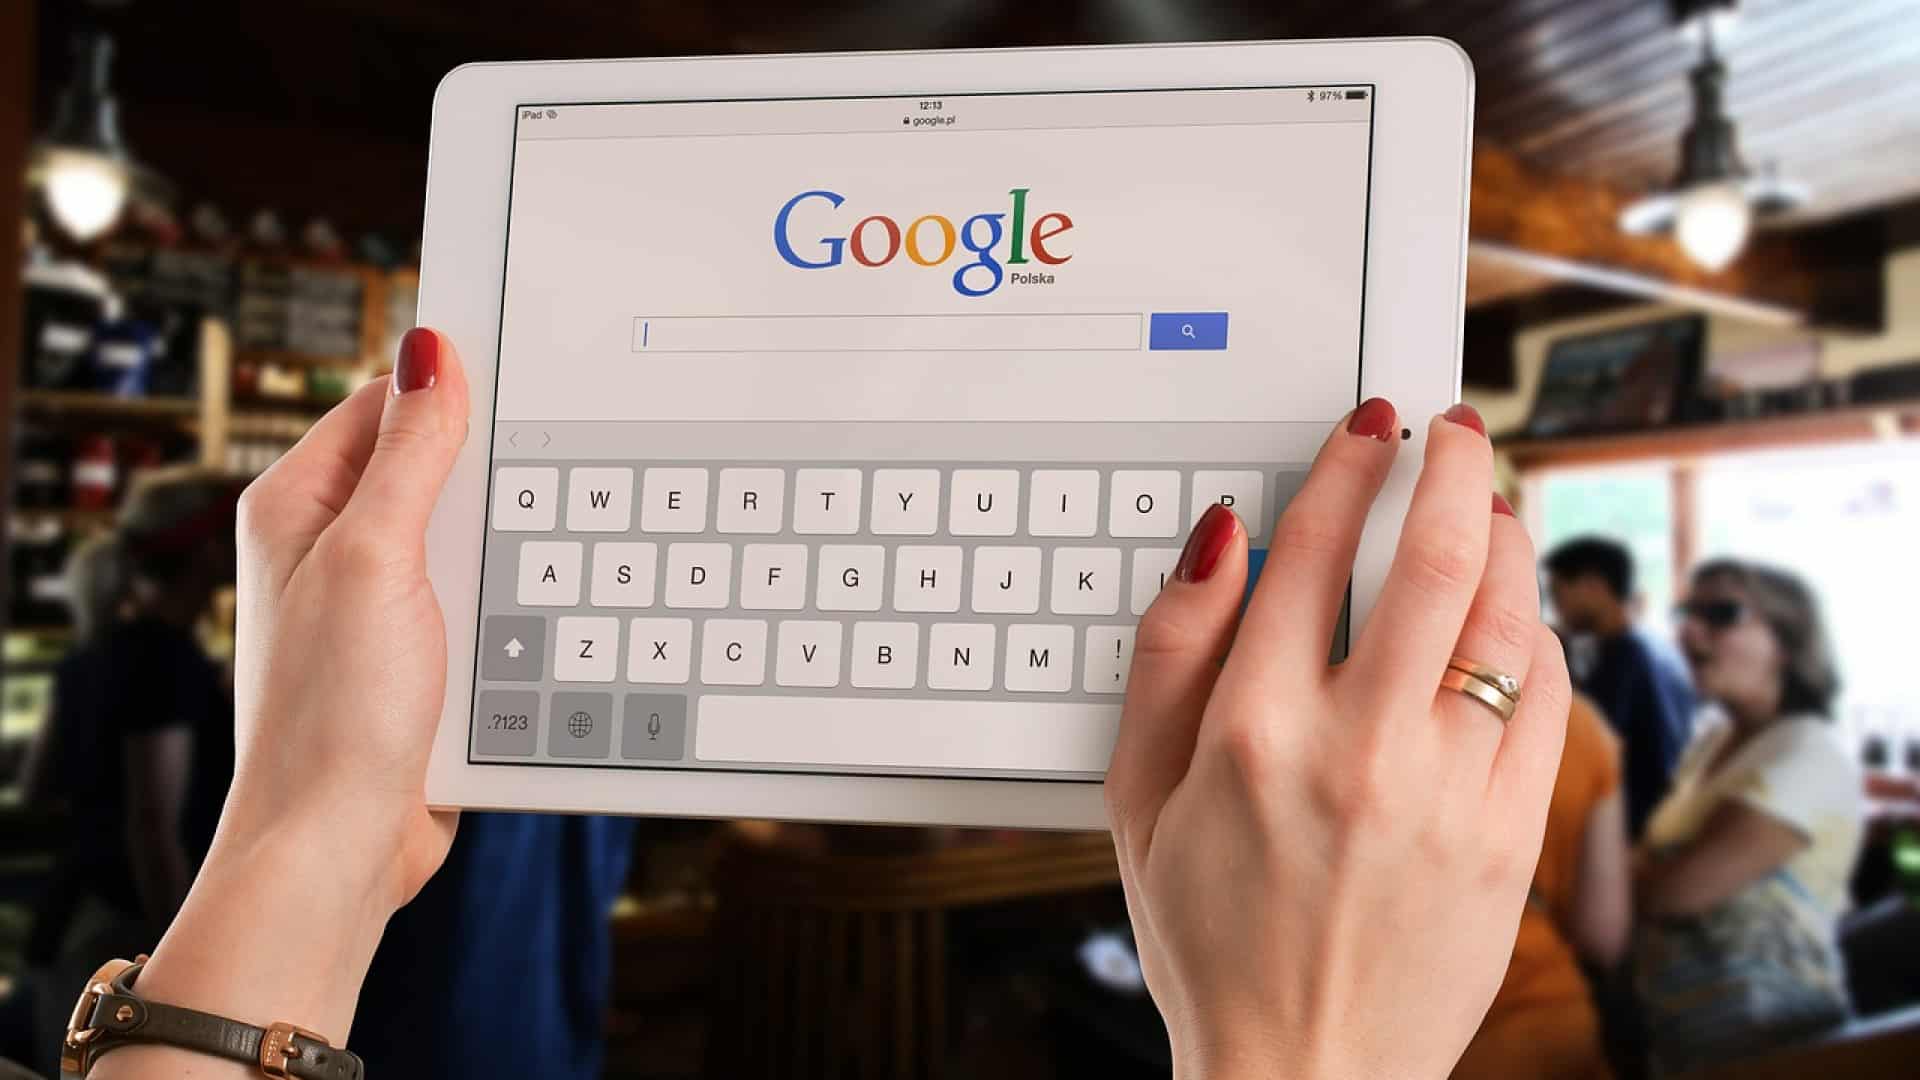 Comment obtenir une certification Google ADS ?